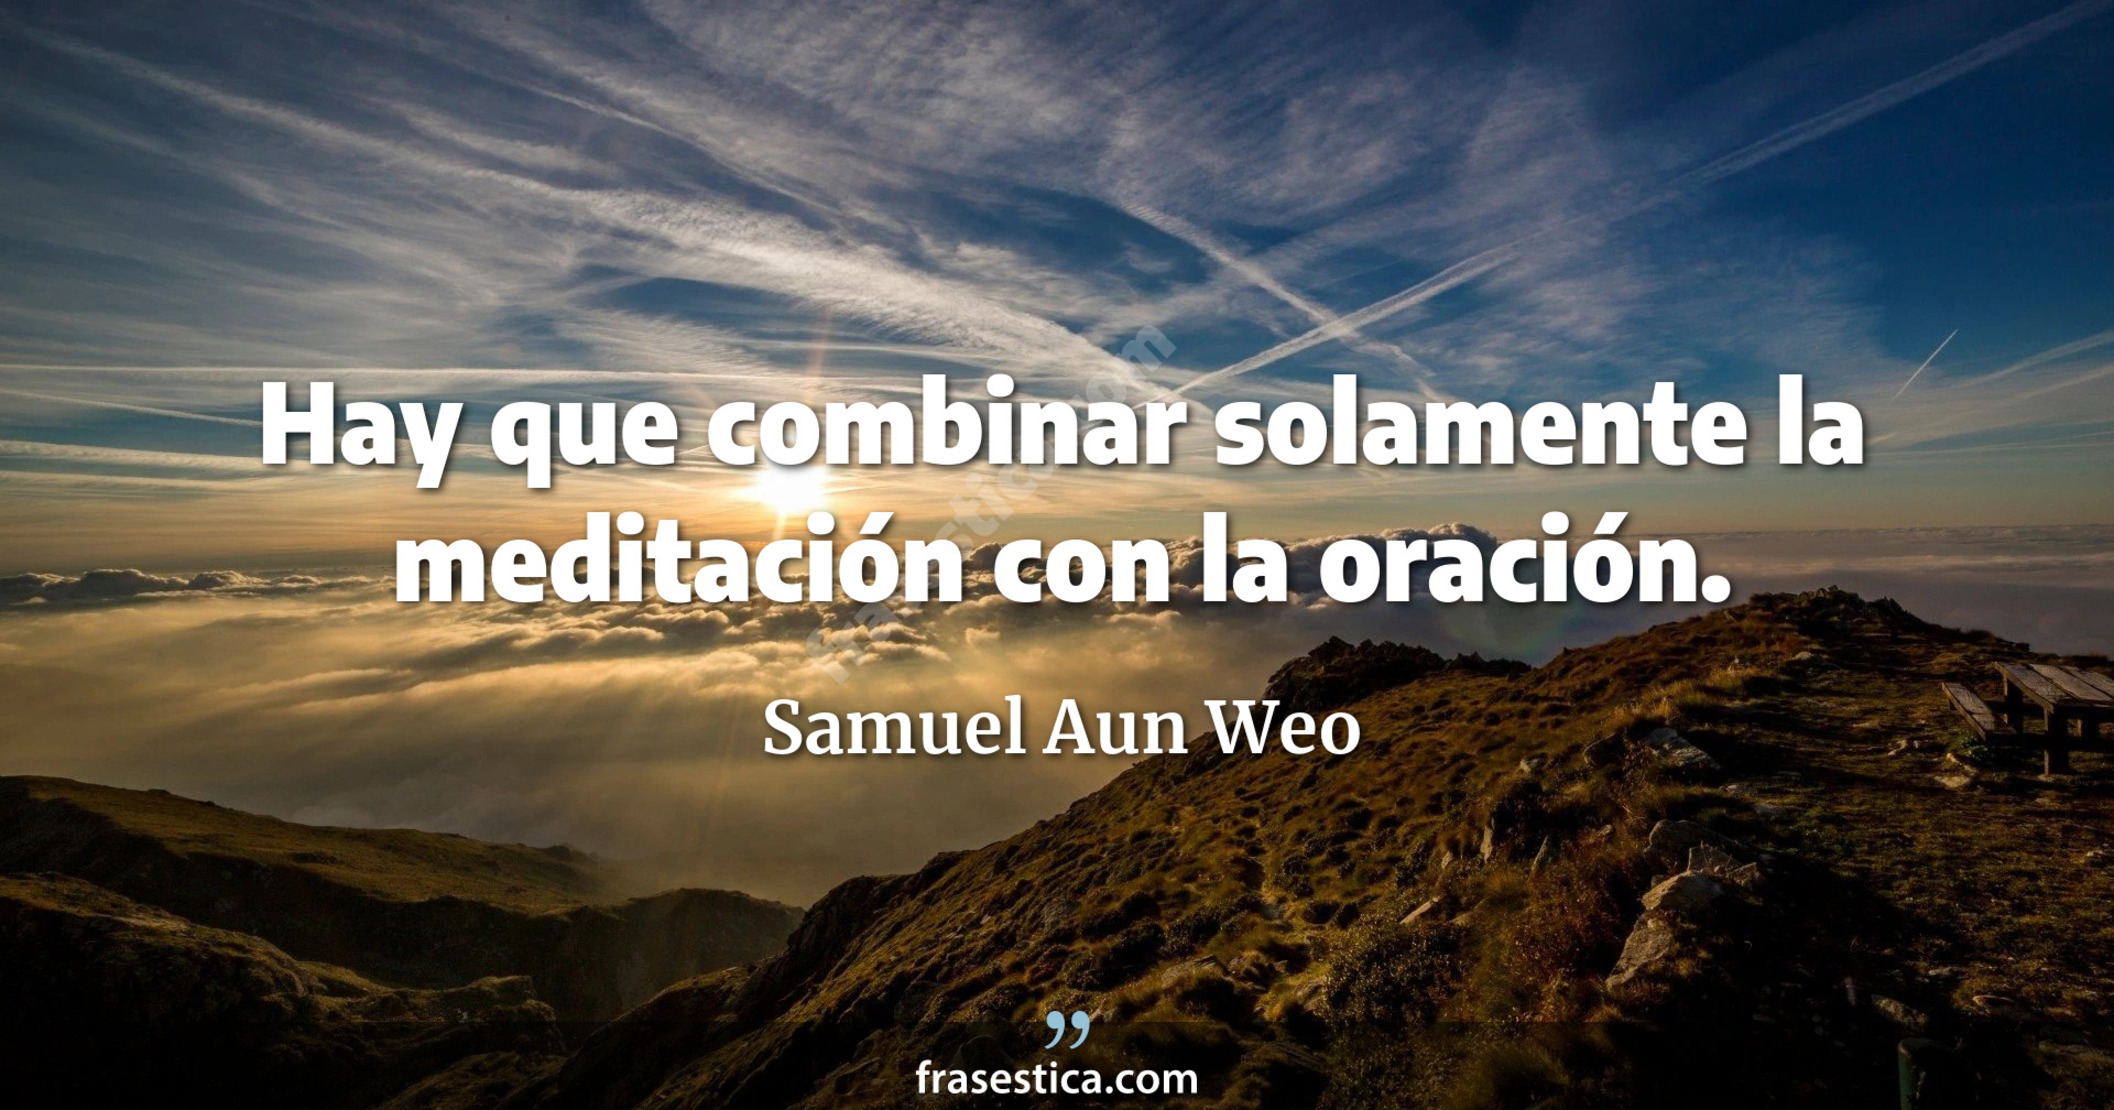 Hay que combinar solamente la meditación con la oración. - Samuel Aun Weo